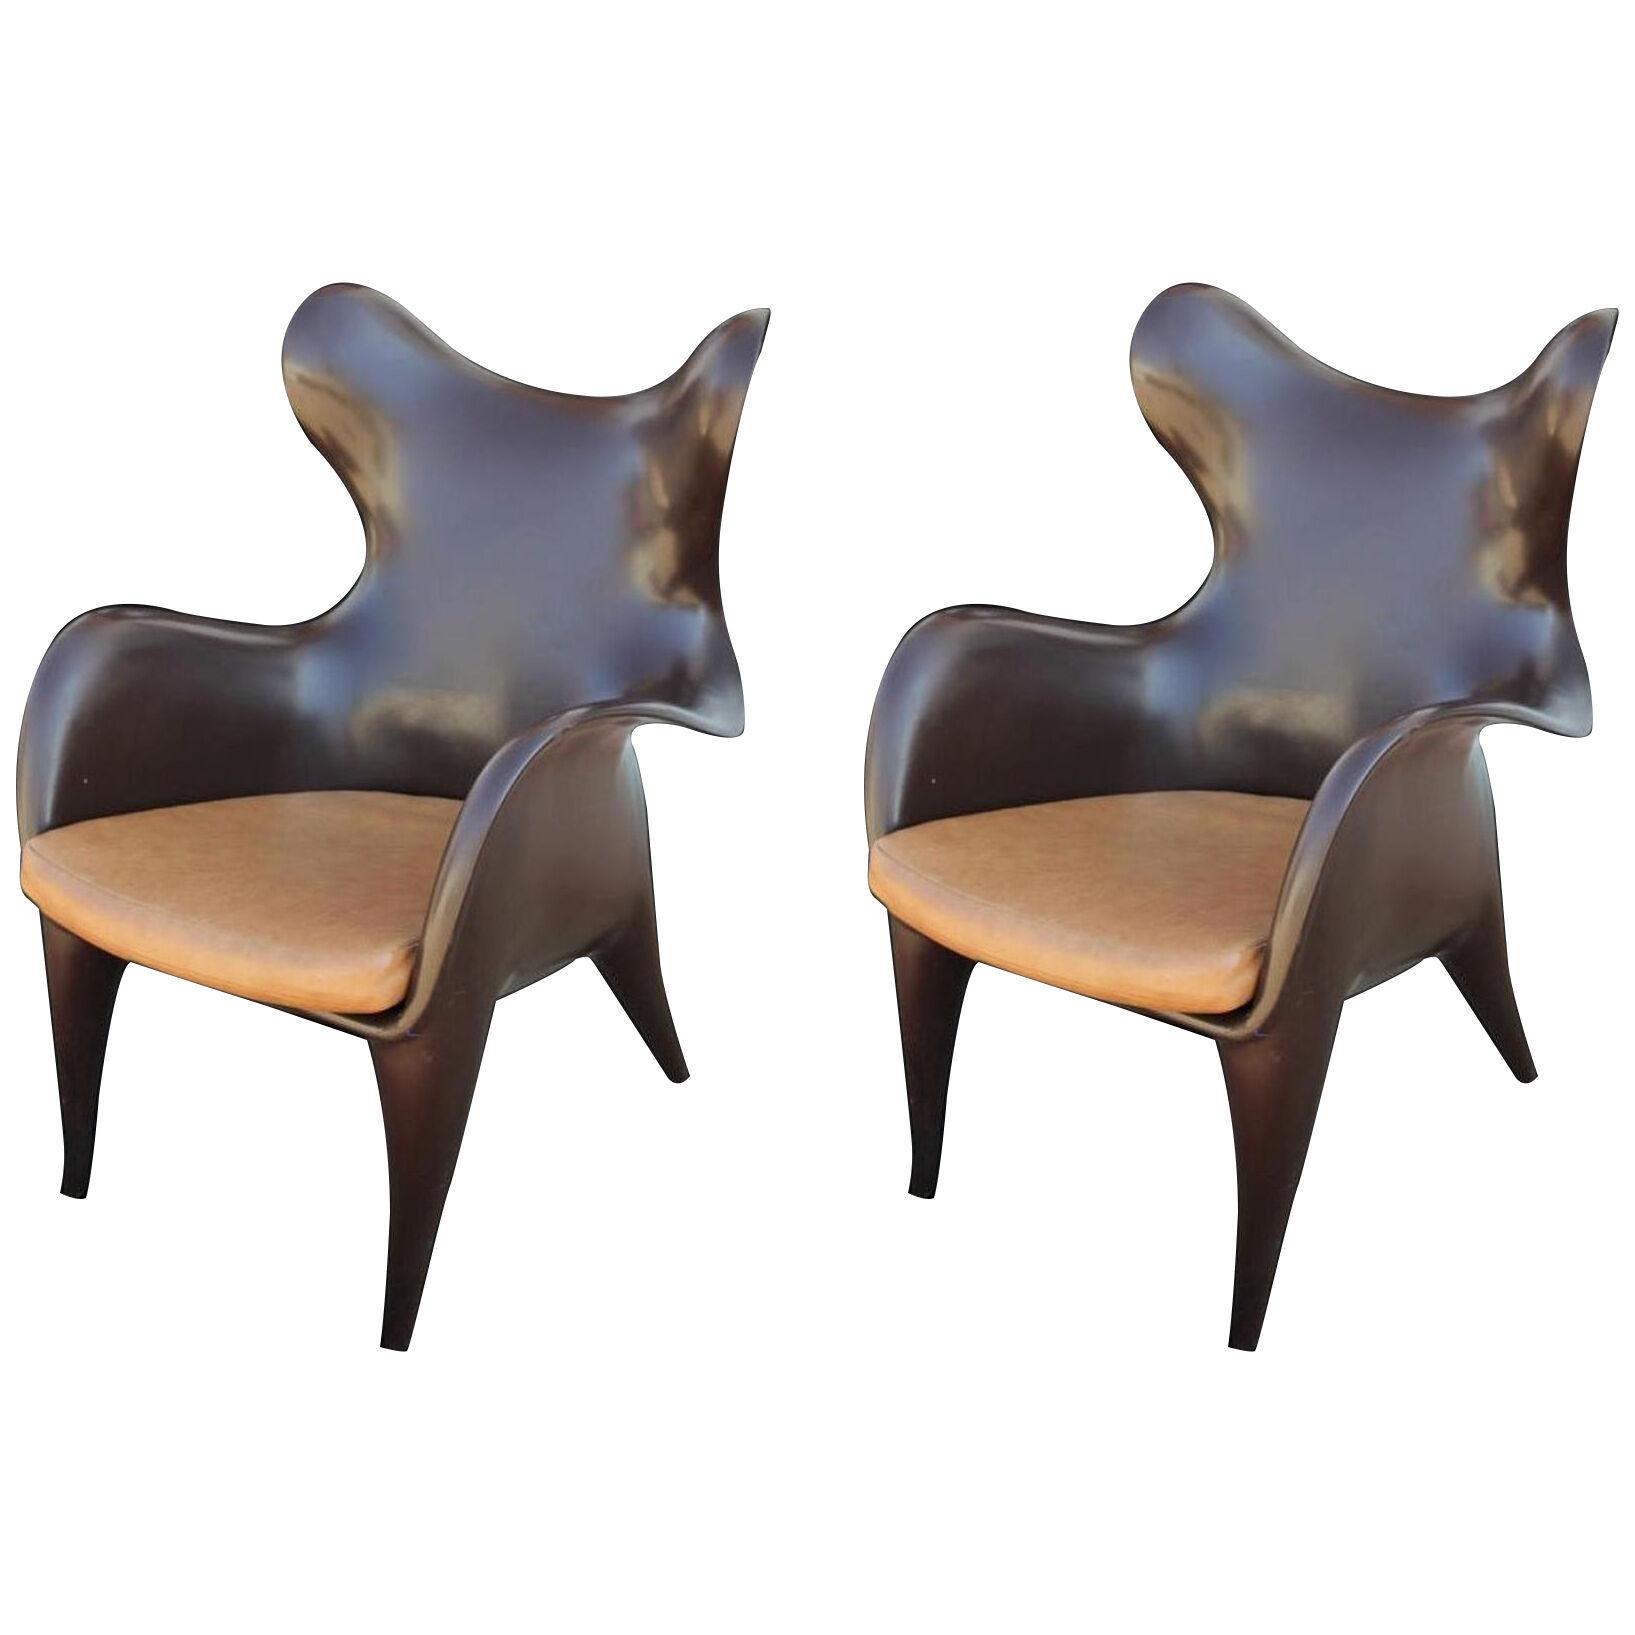 Modern Sculptural Johnnie Chairs by Jordan Mozer - a Pair